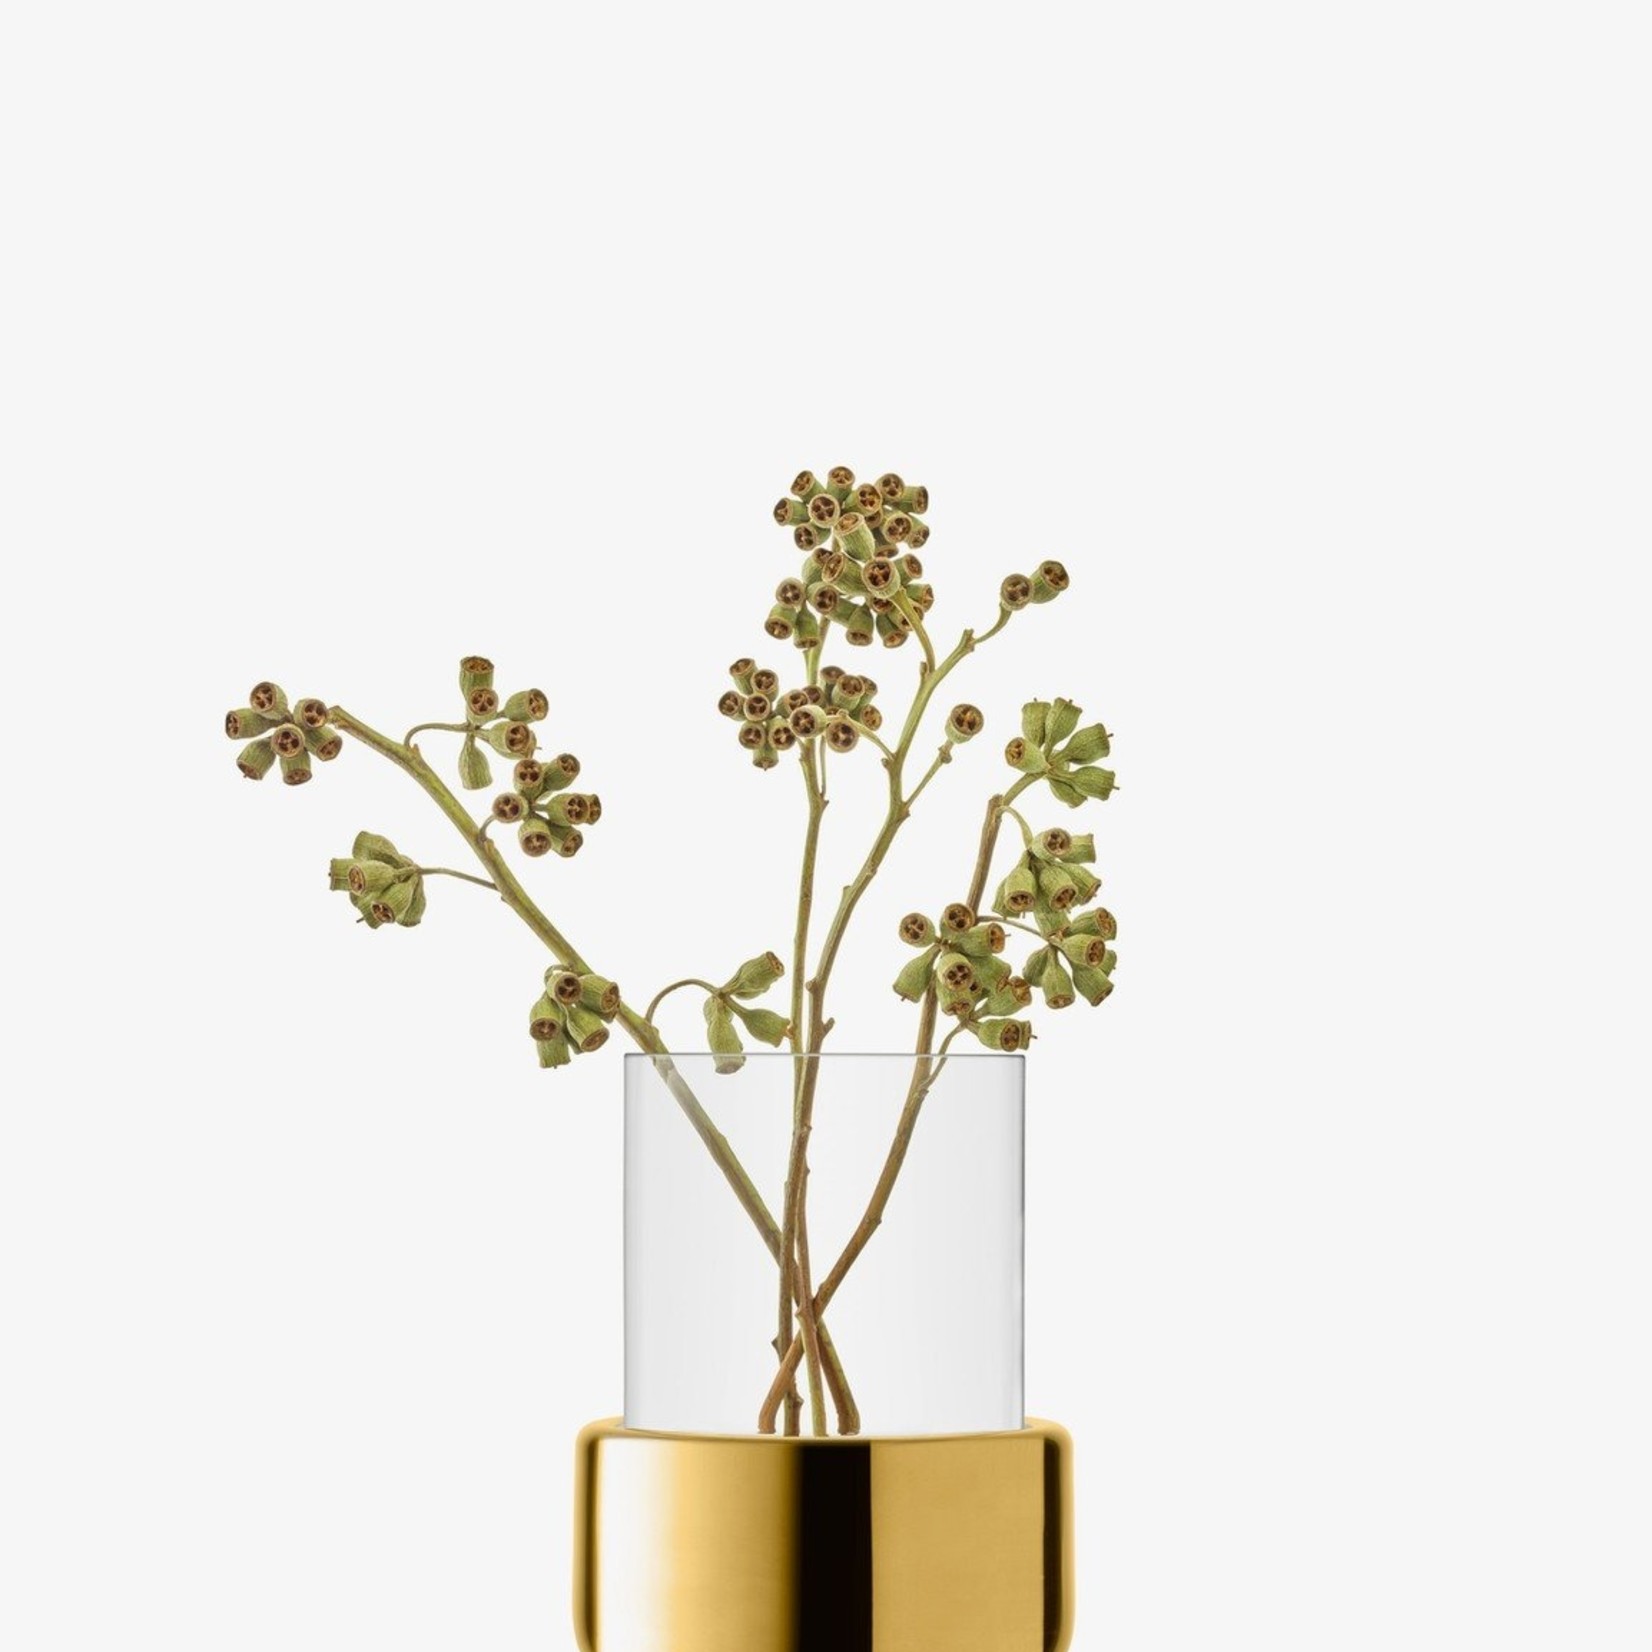 Aurum Lantern/Vase H7.75in, Clear/Gold